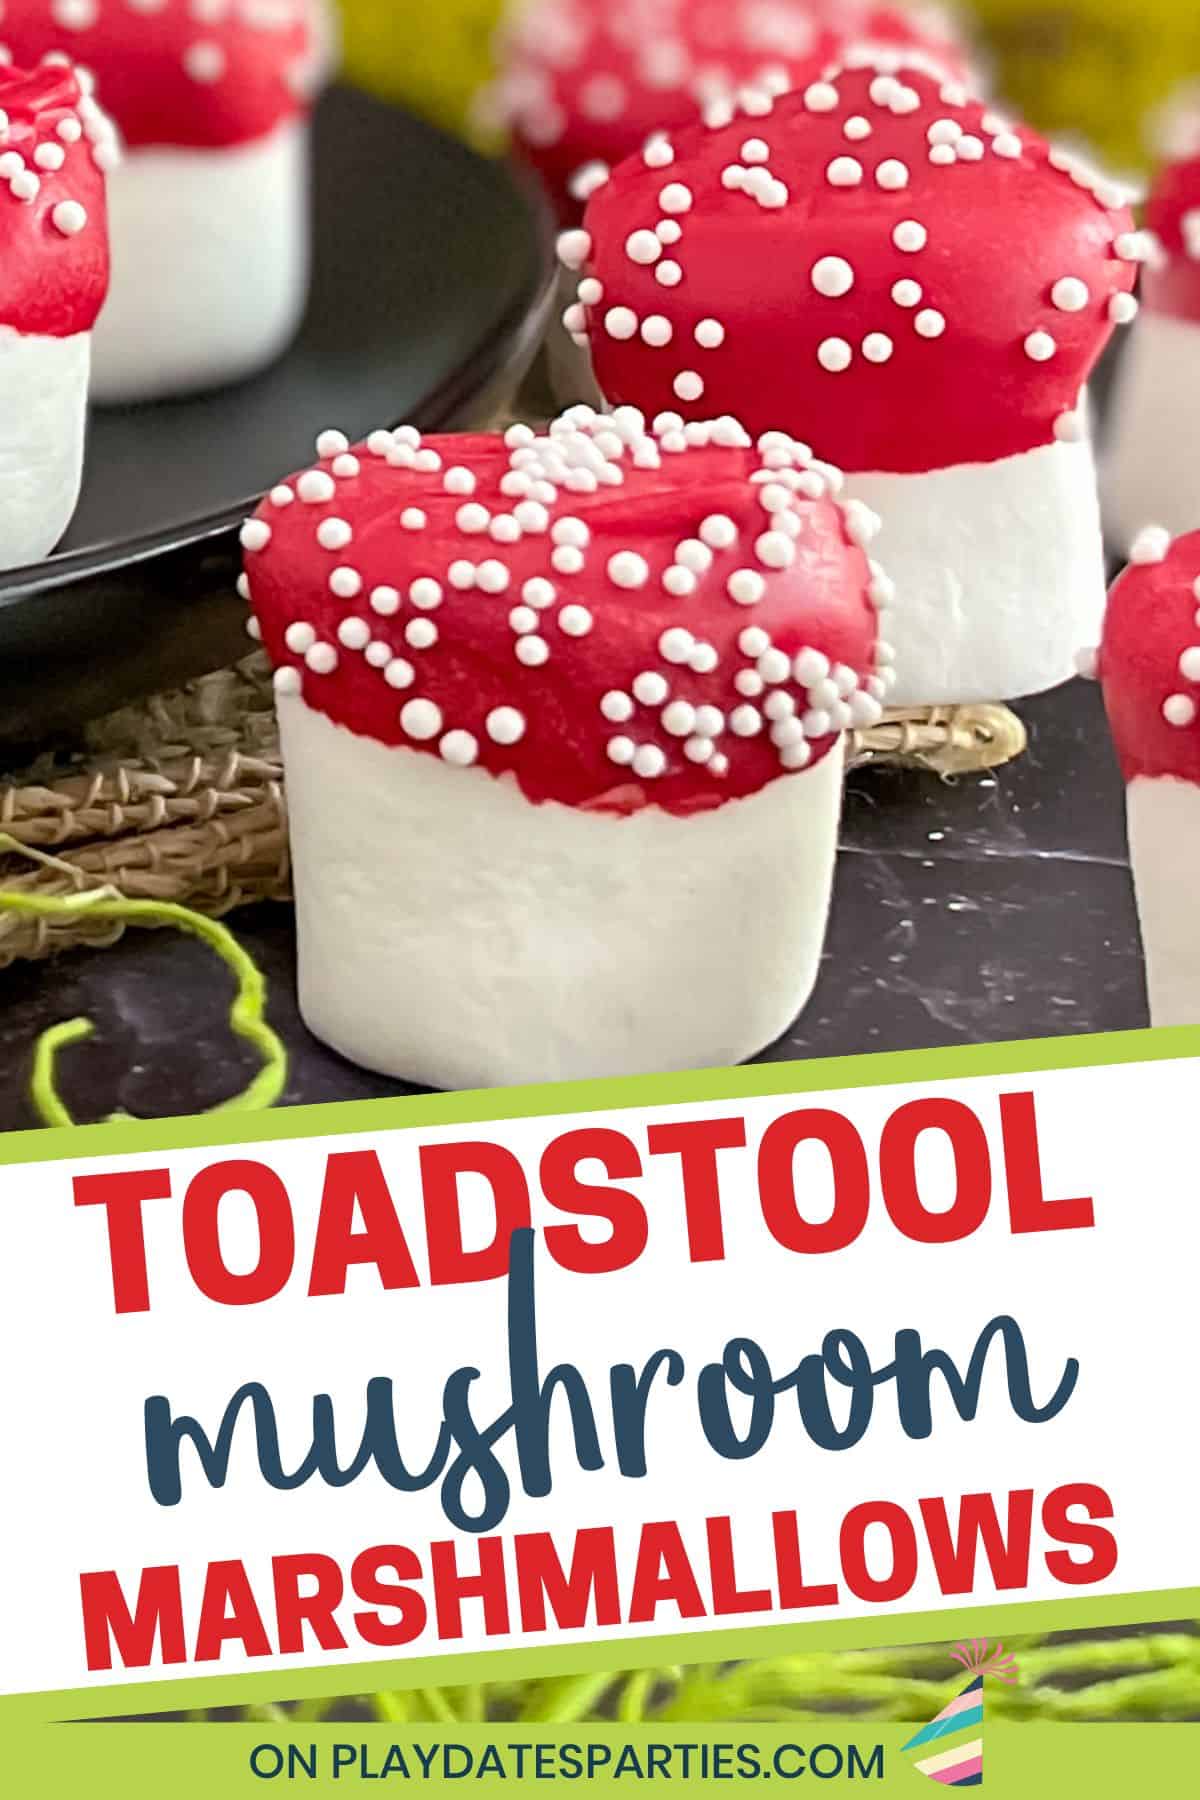 Toadstool Mushroom Marshmallows.